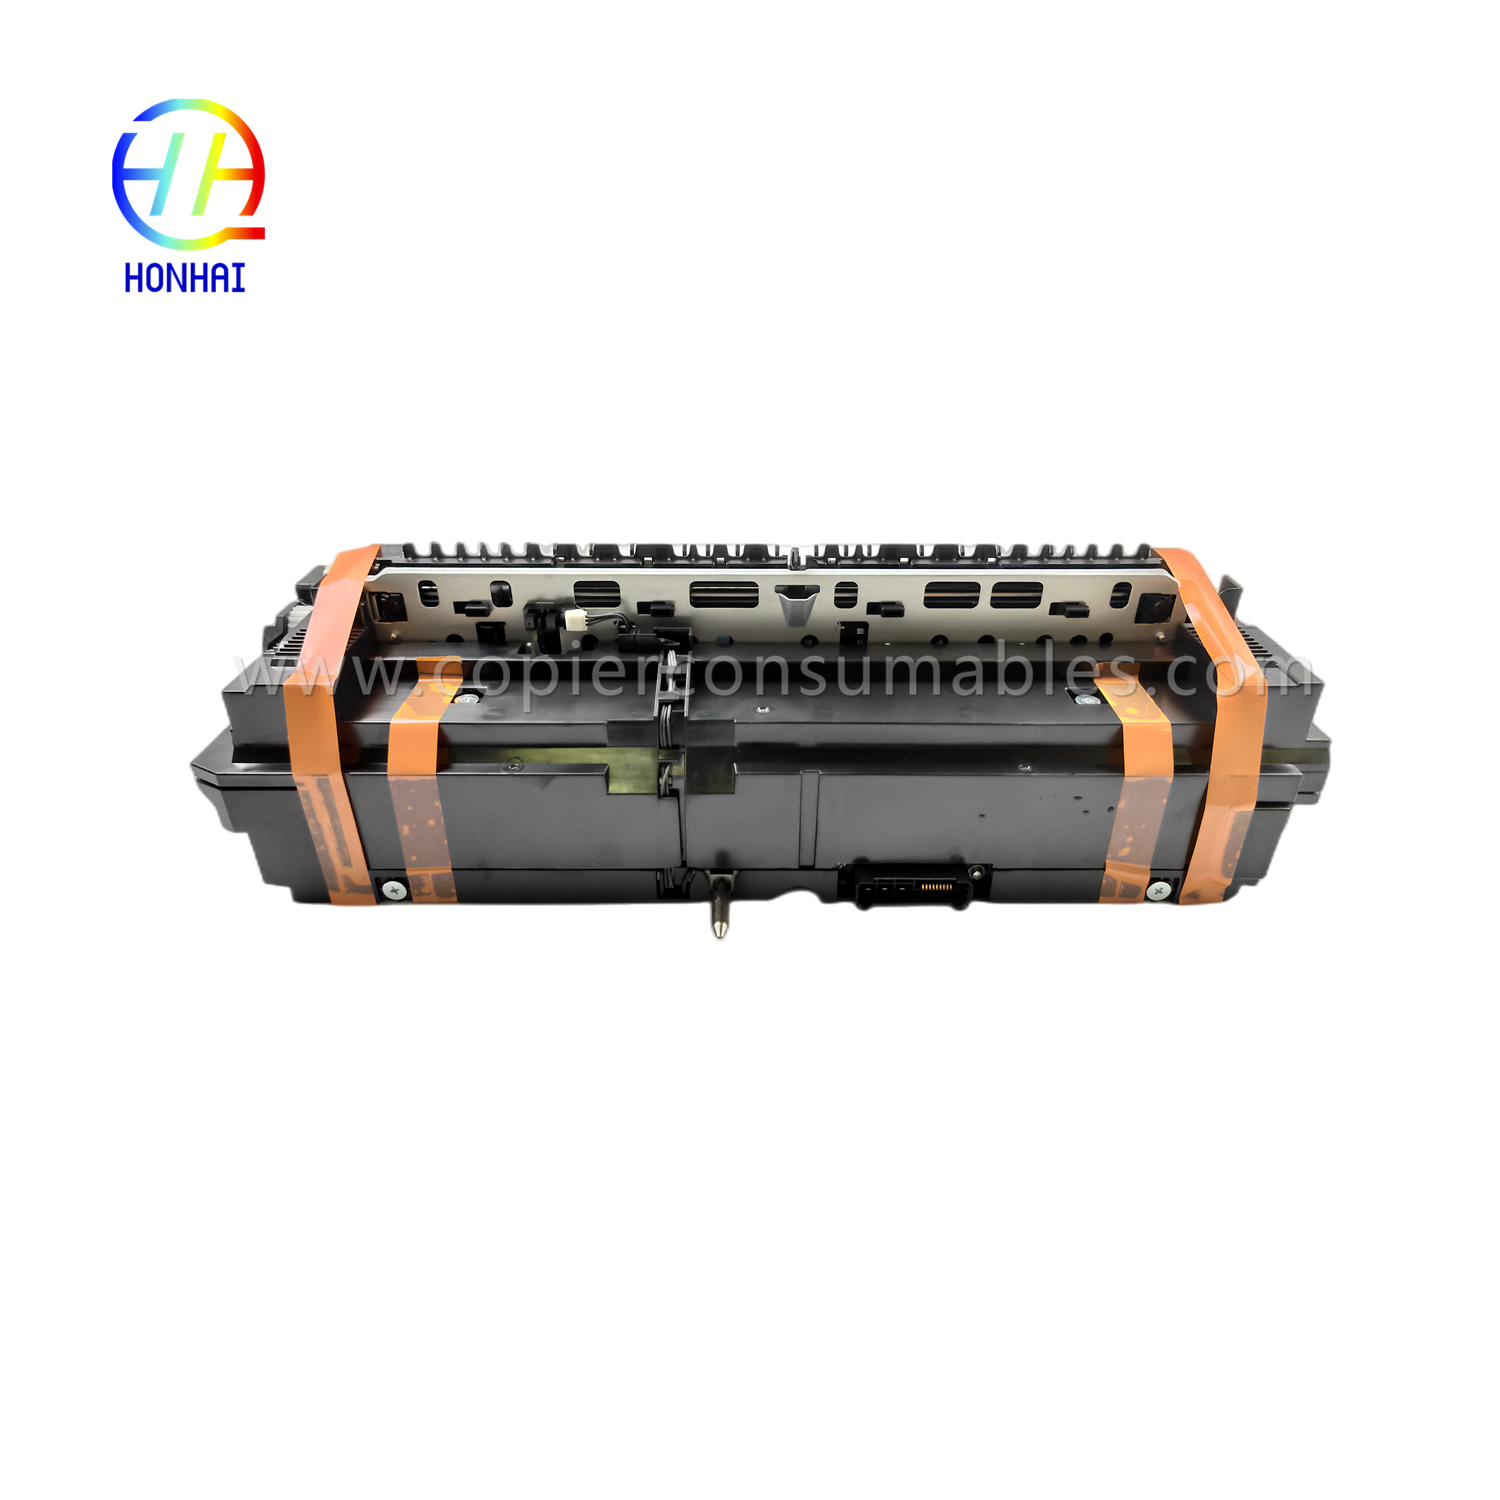 https://c585.goodao.net/juego-de-unidad-de-batería-para-canon-ir-c250-c255-c350-c351-c355-product/